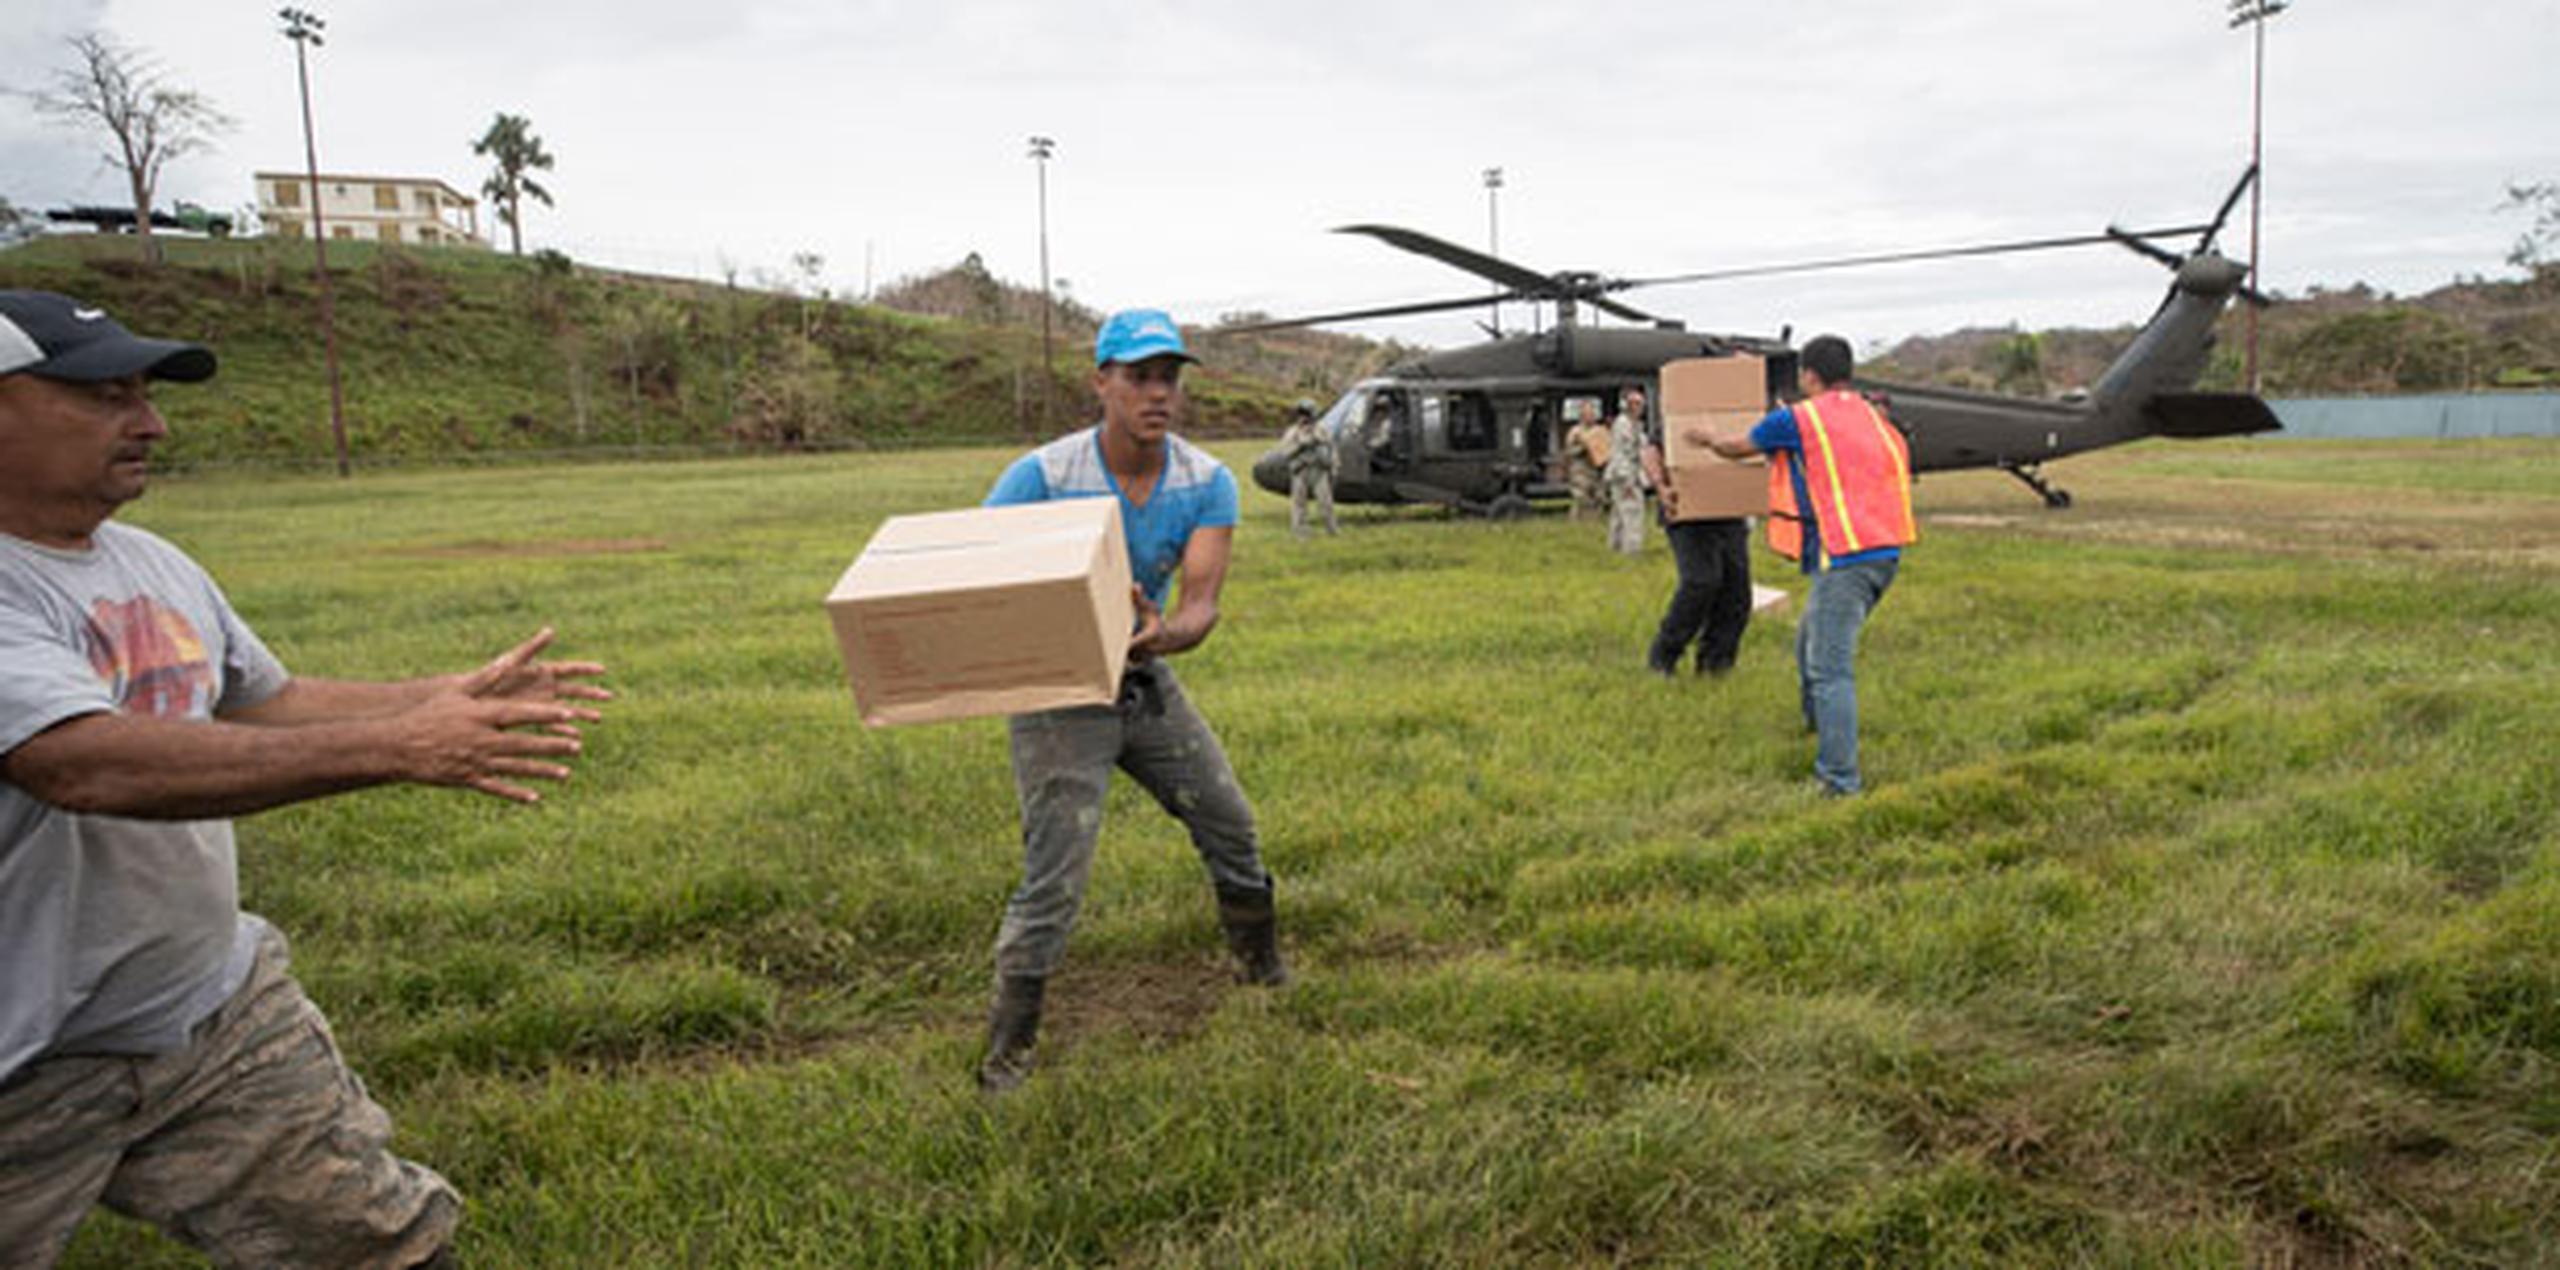 Hasta el momento FEMA, que dispone de 1,400 efectivos en la isla ayudando en la emergencia del huracán María, ha entregado millones de comidas y de litros de agua.  (Foto por Jorge A Ramirez Portela)